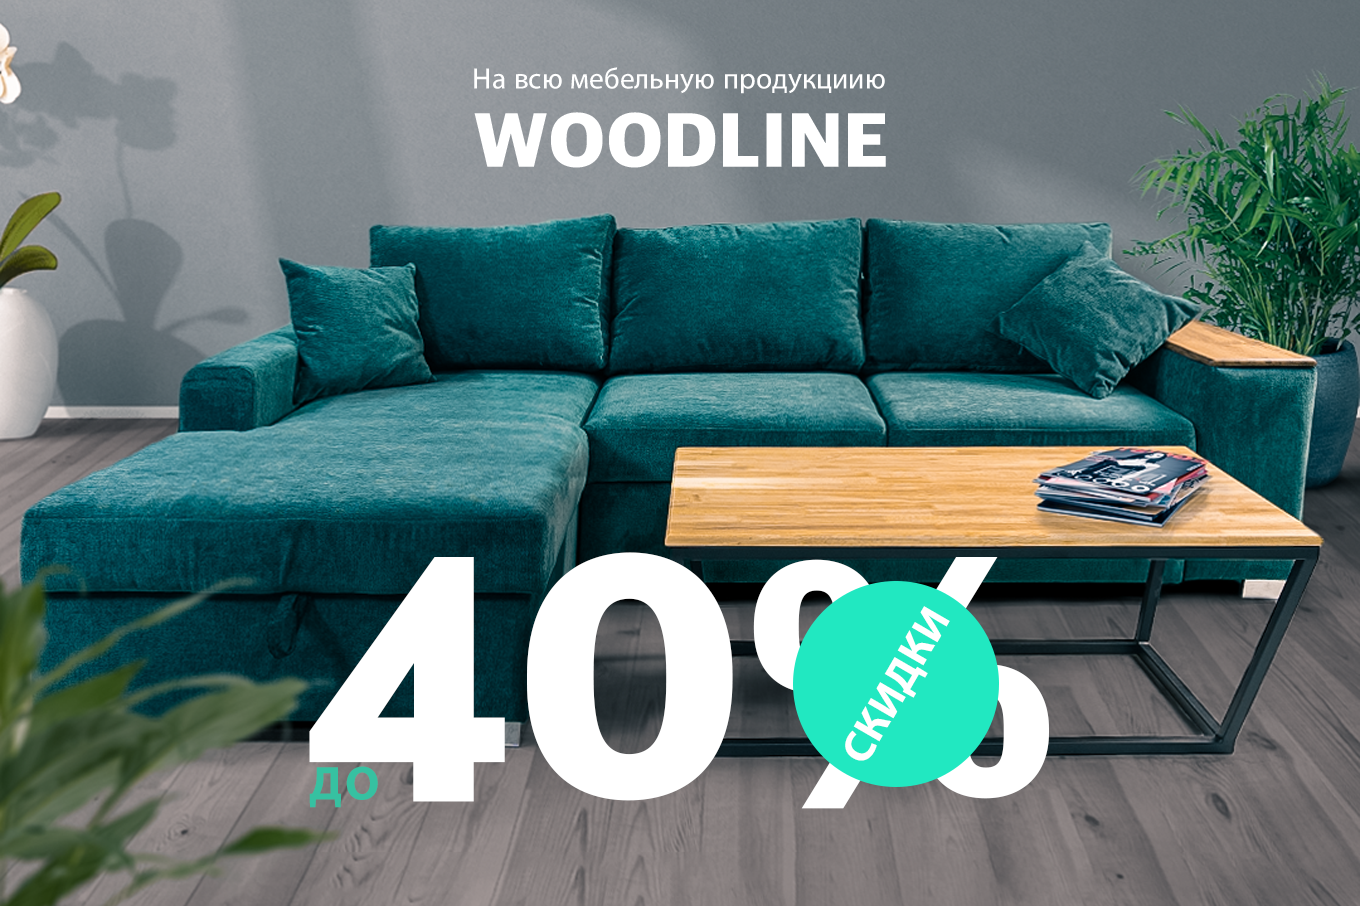 Скидки до 40% в честь пятилетия мебельной фабрики Woodline